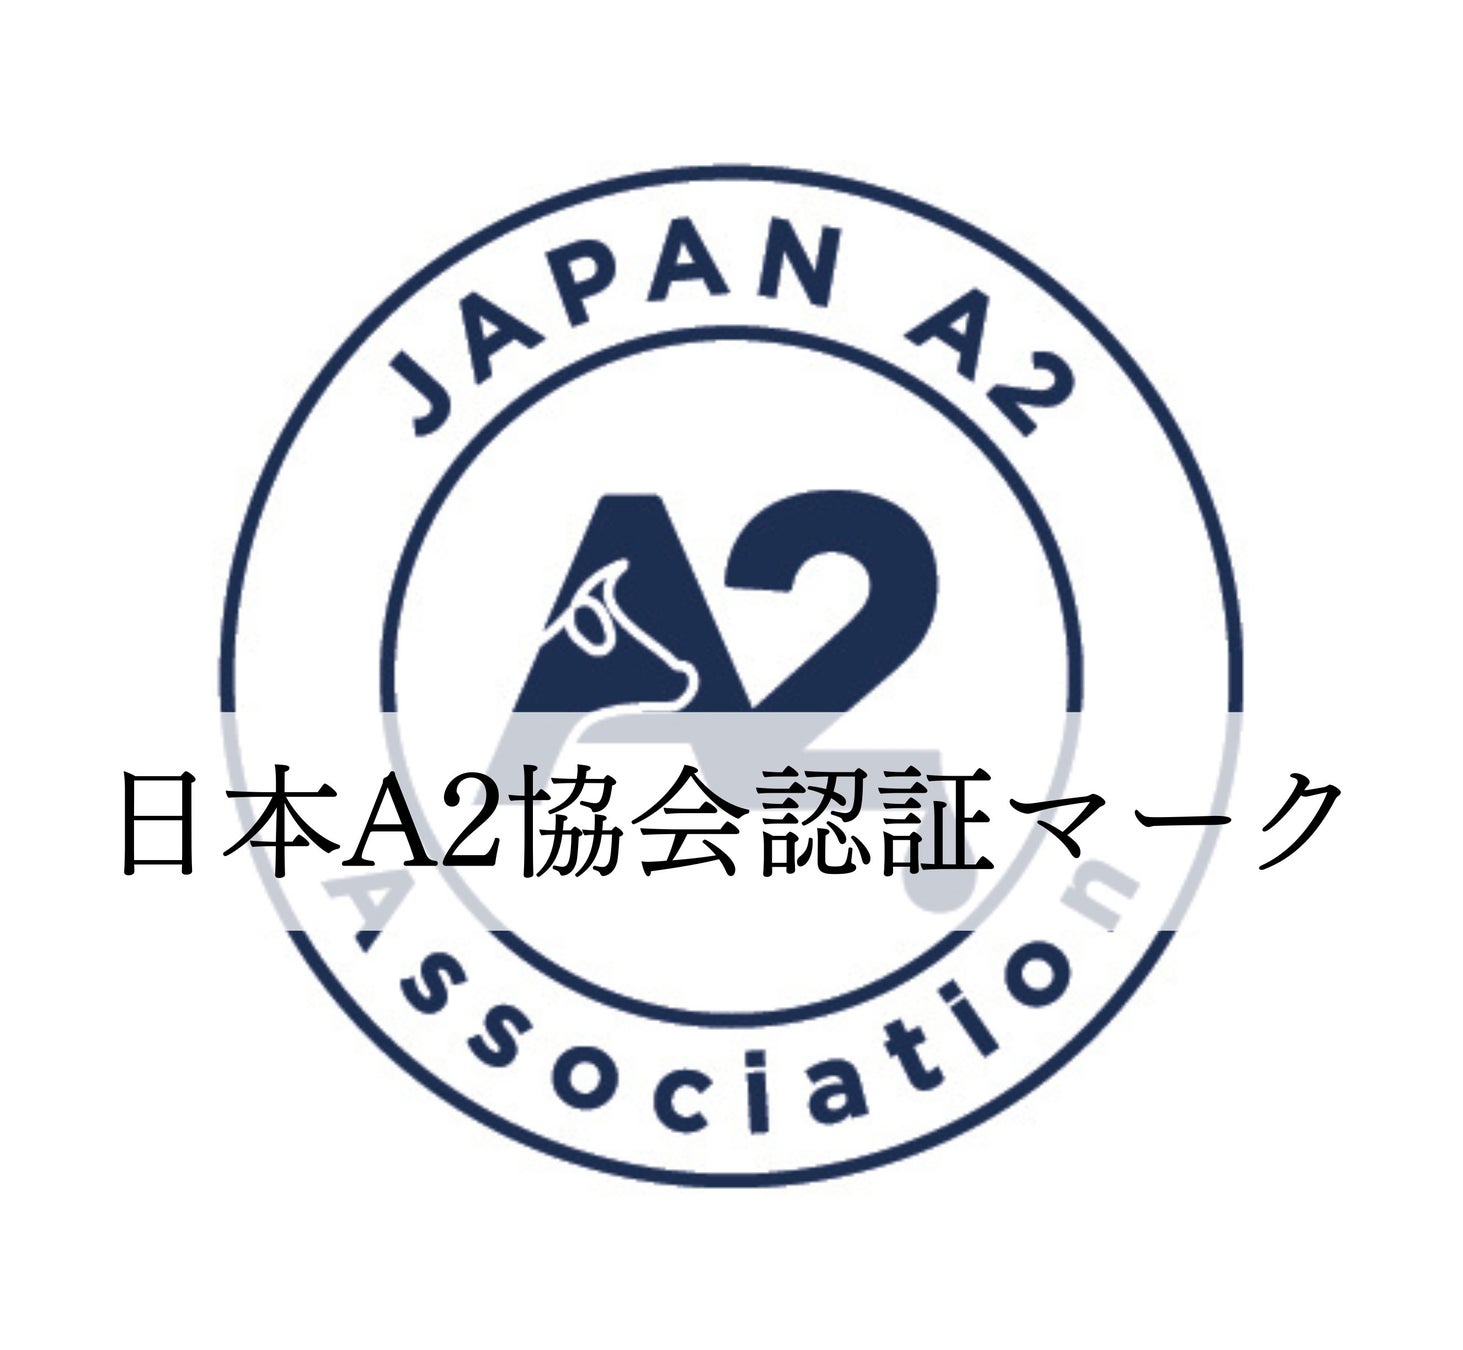 日本A2ミルク協会　認証制度の構築に向けた監査委員会を設立　安心安全なA2ミルクの普及を目指し日本初の品質管理基準を発表